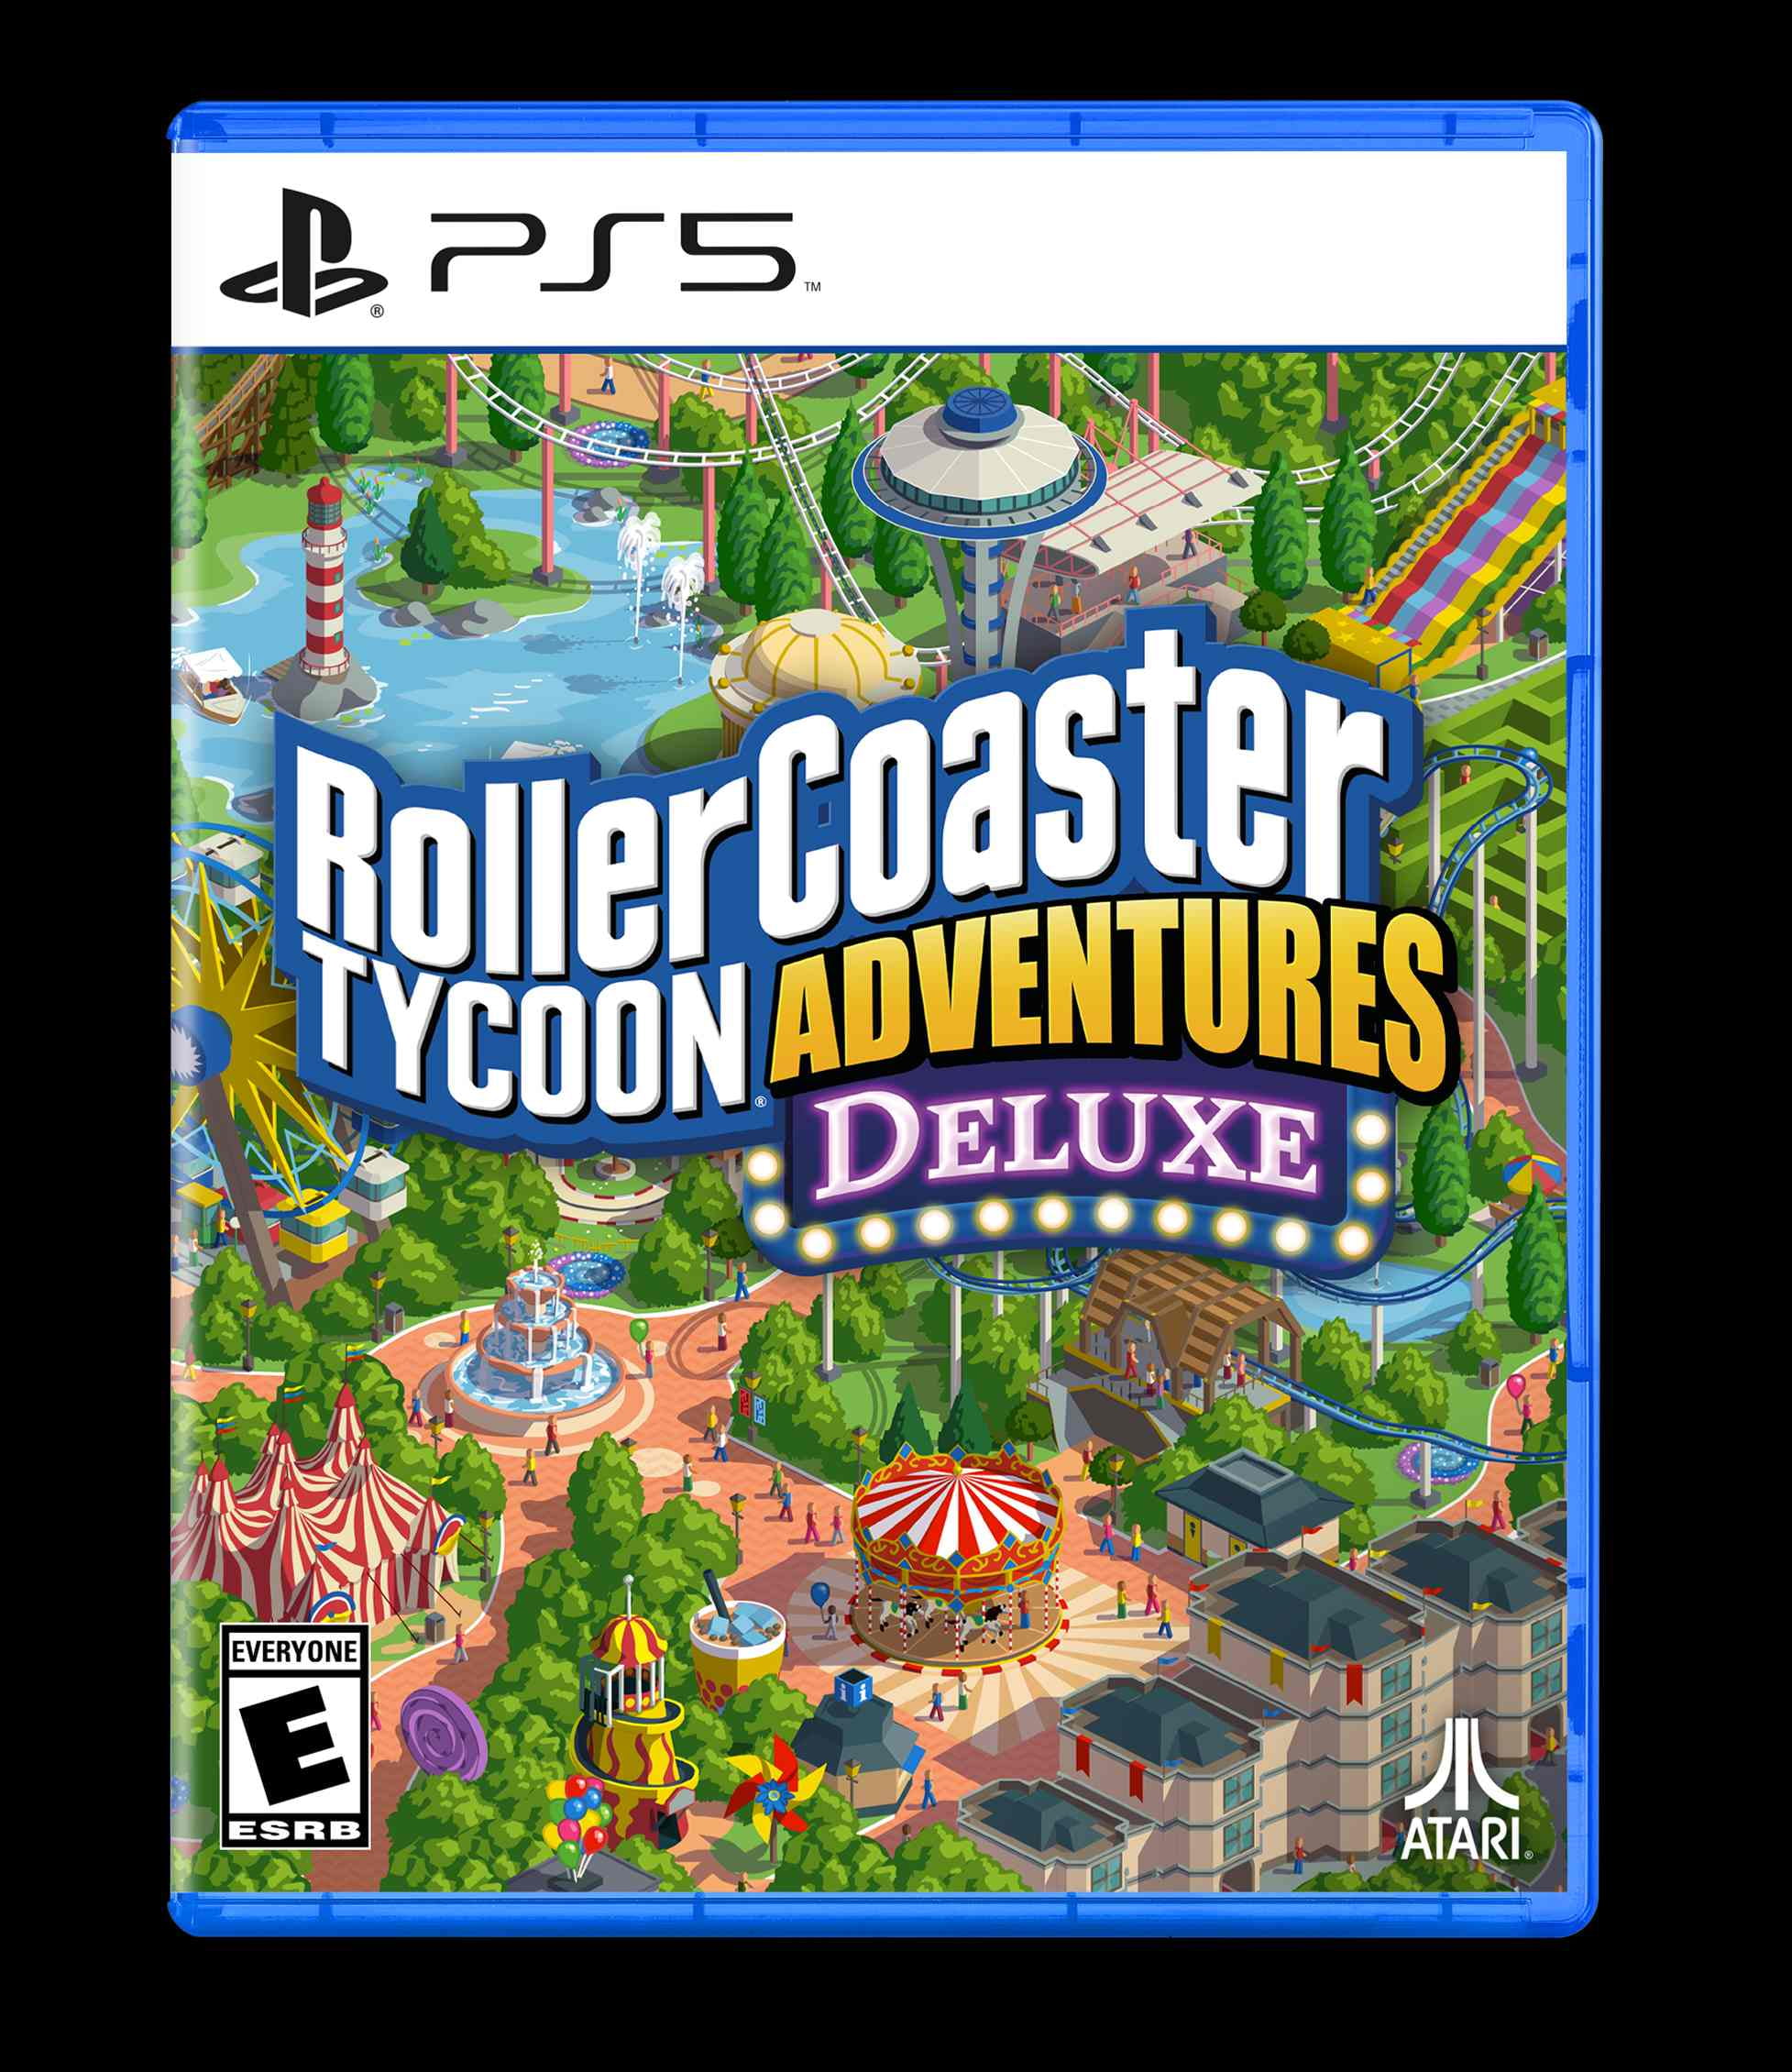 Roller Coaster Tycoon Adventures Deluxe - Nintendo Switch